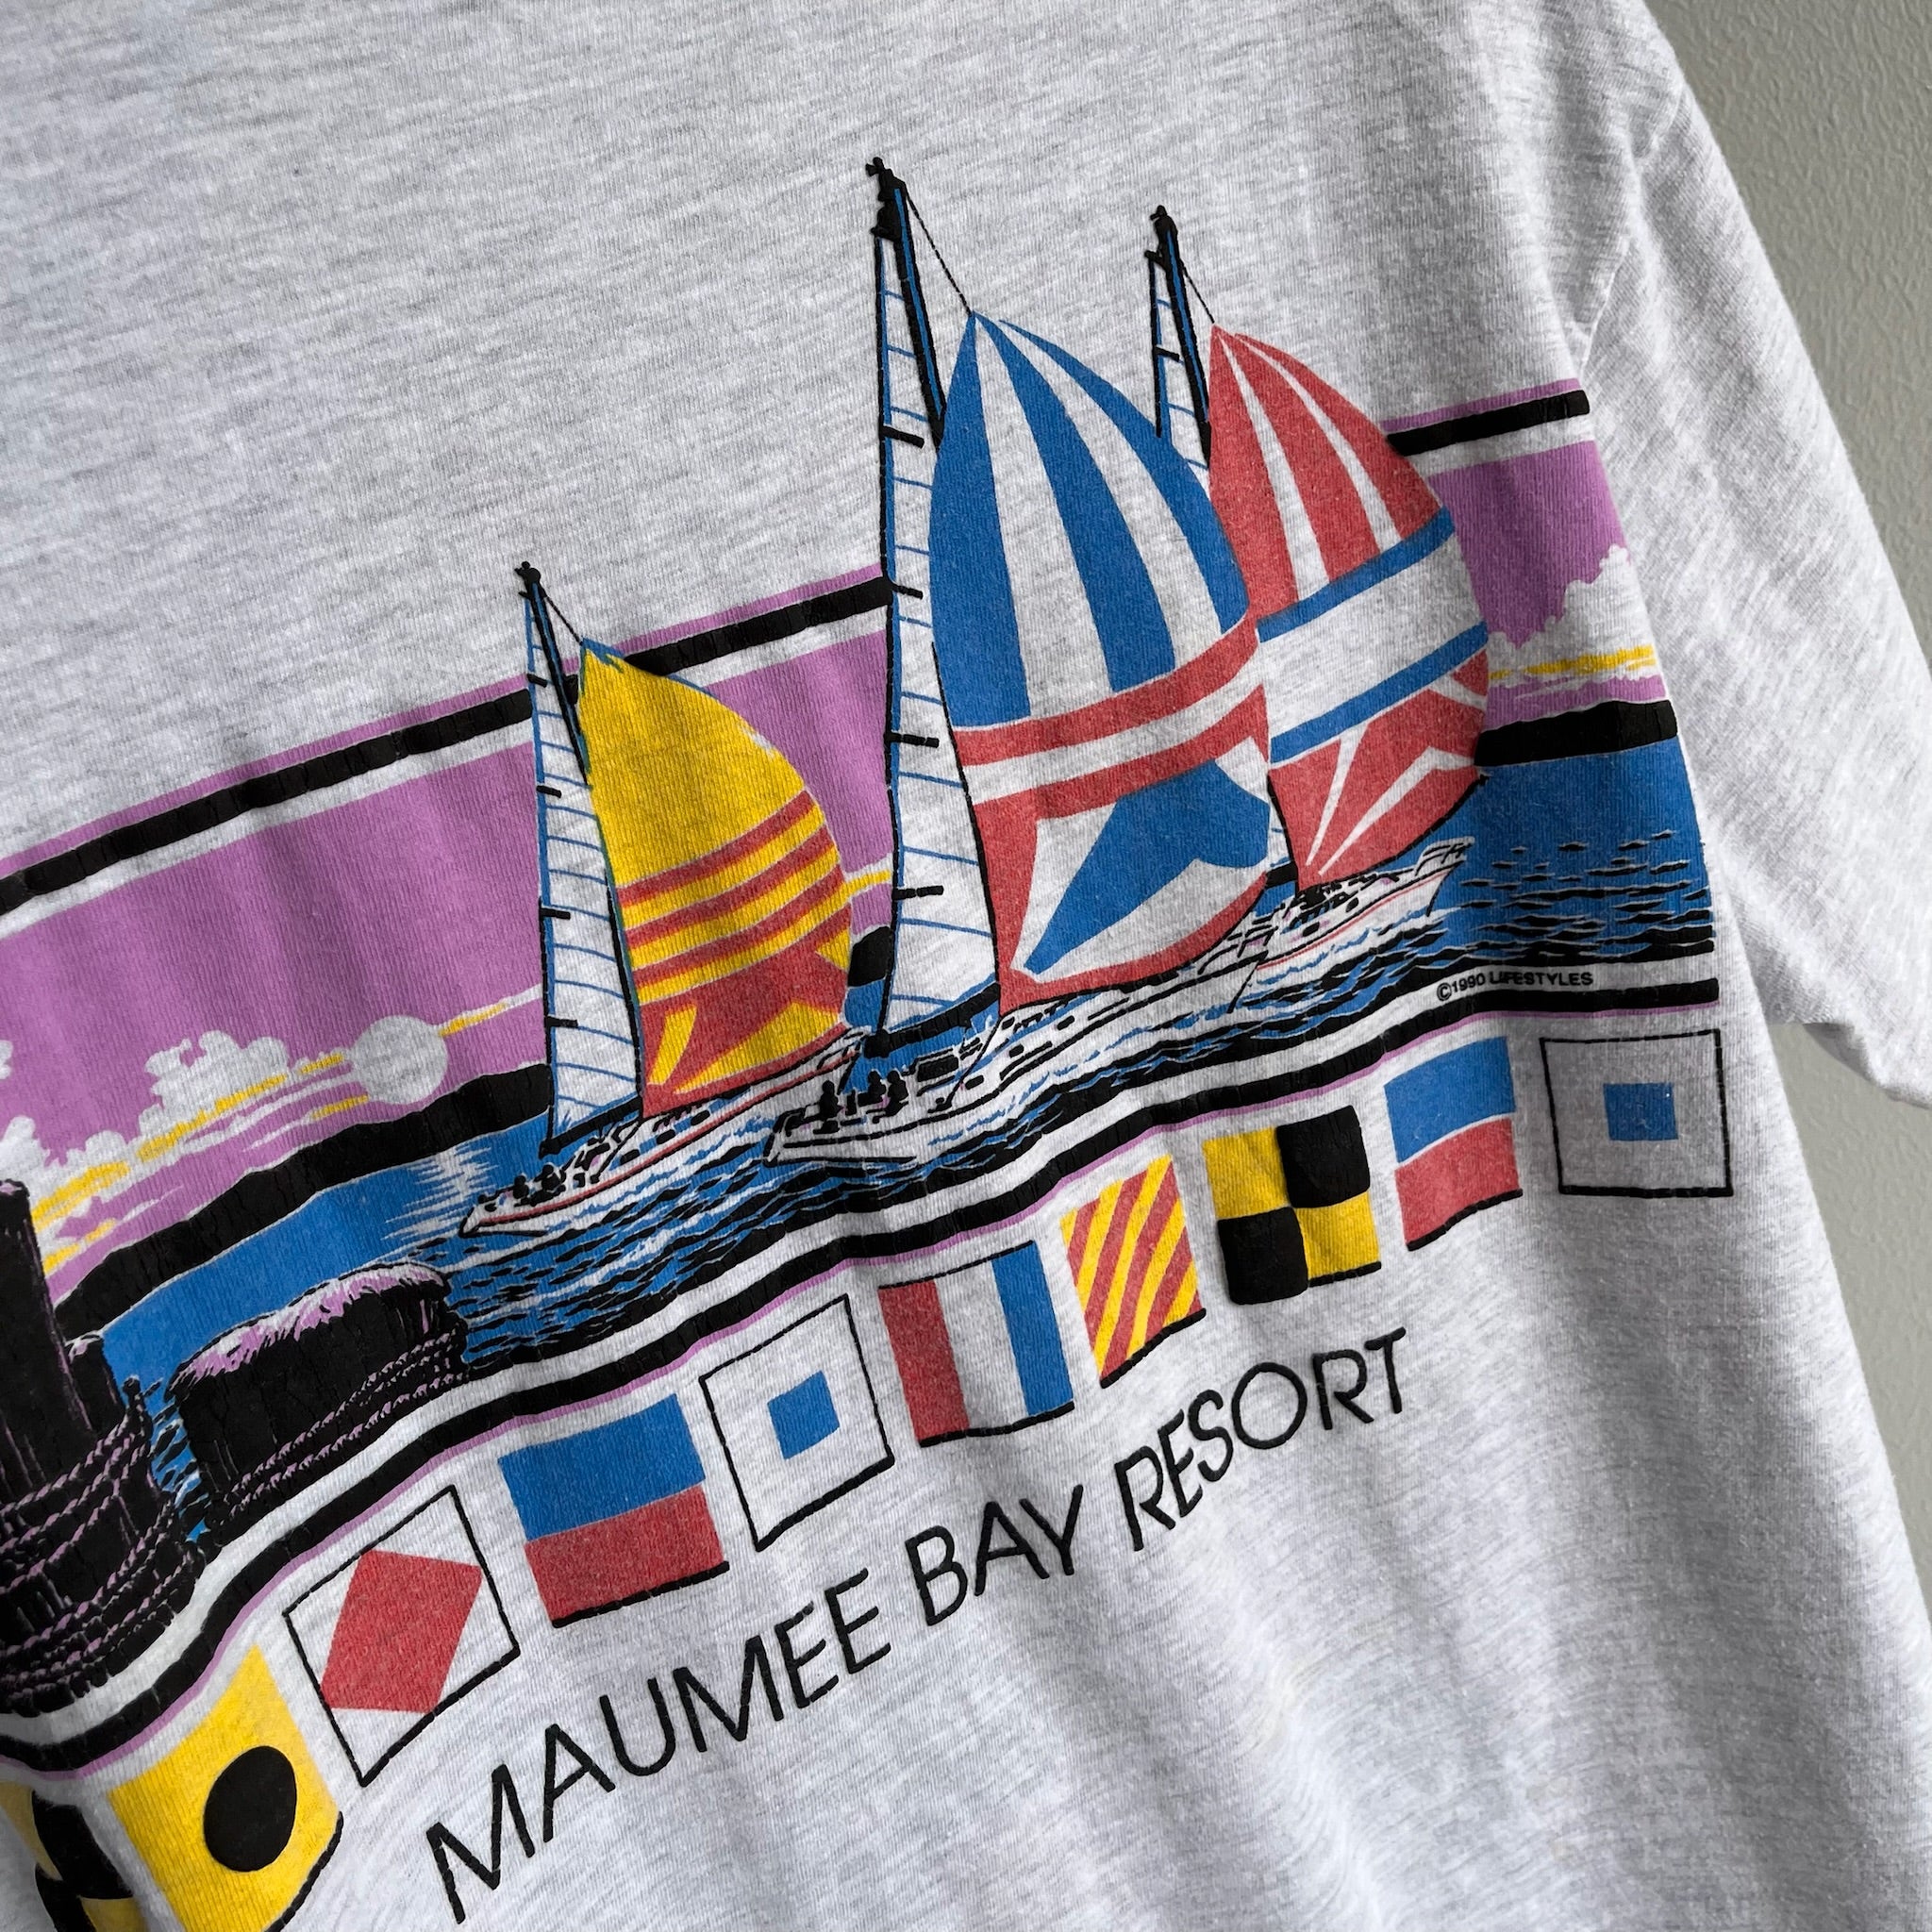 1990 Maumee Bay Resort T-Shirt